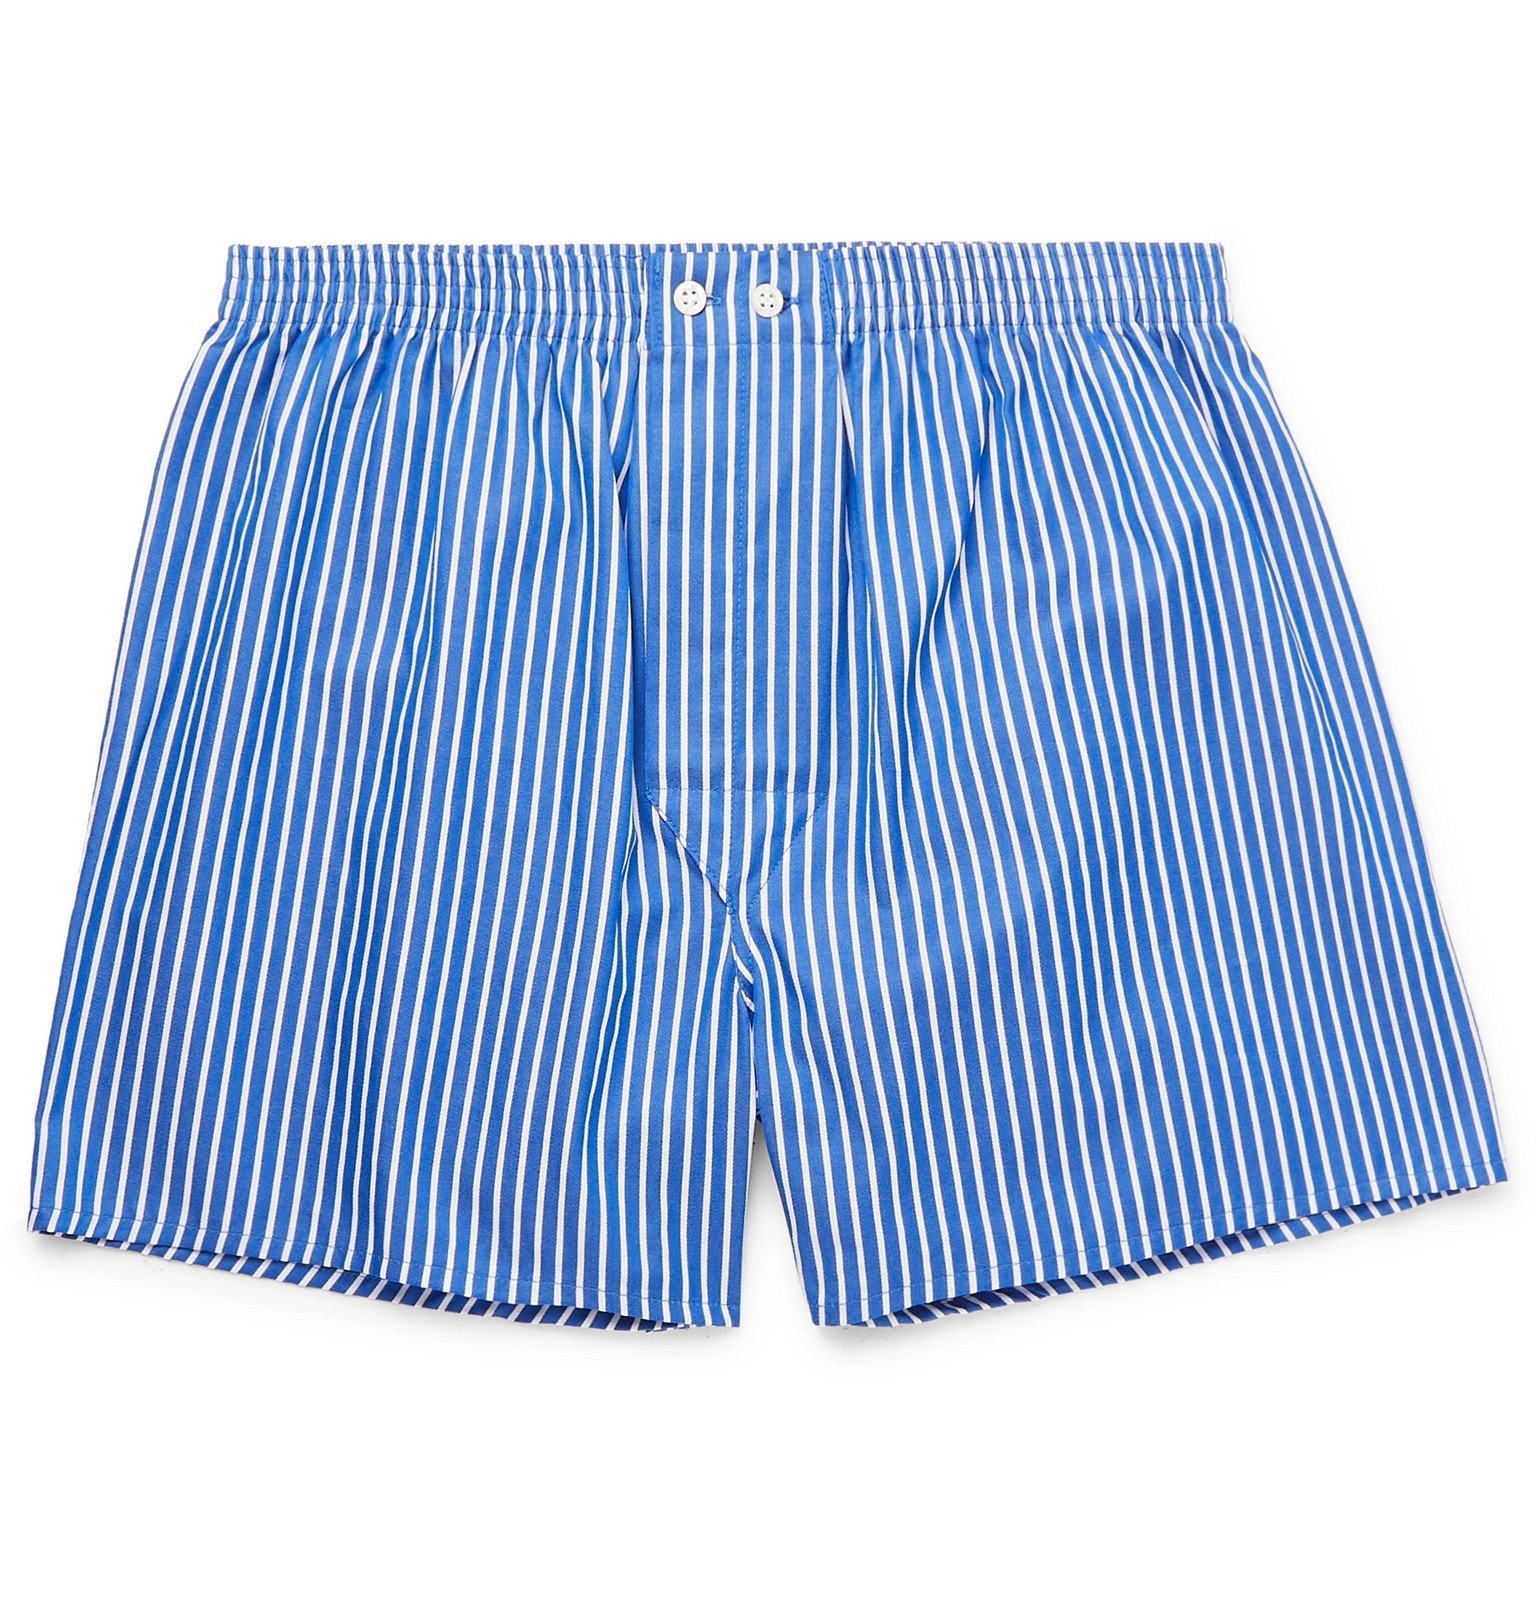 Derek Rose - Royal Striped Cotton Boxer Shorts - Blue Derek Rose